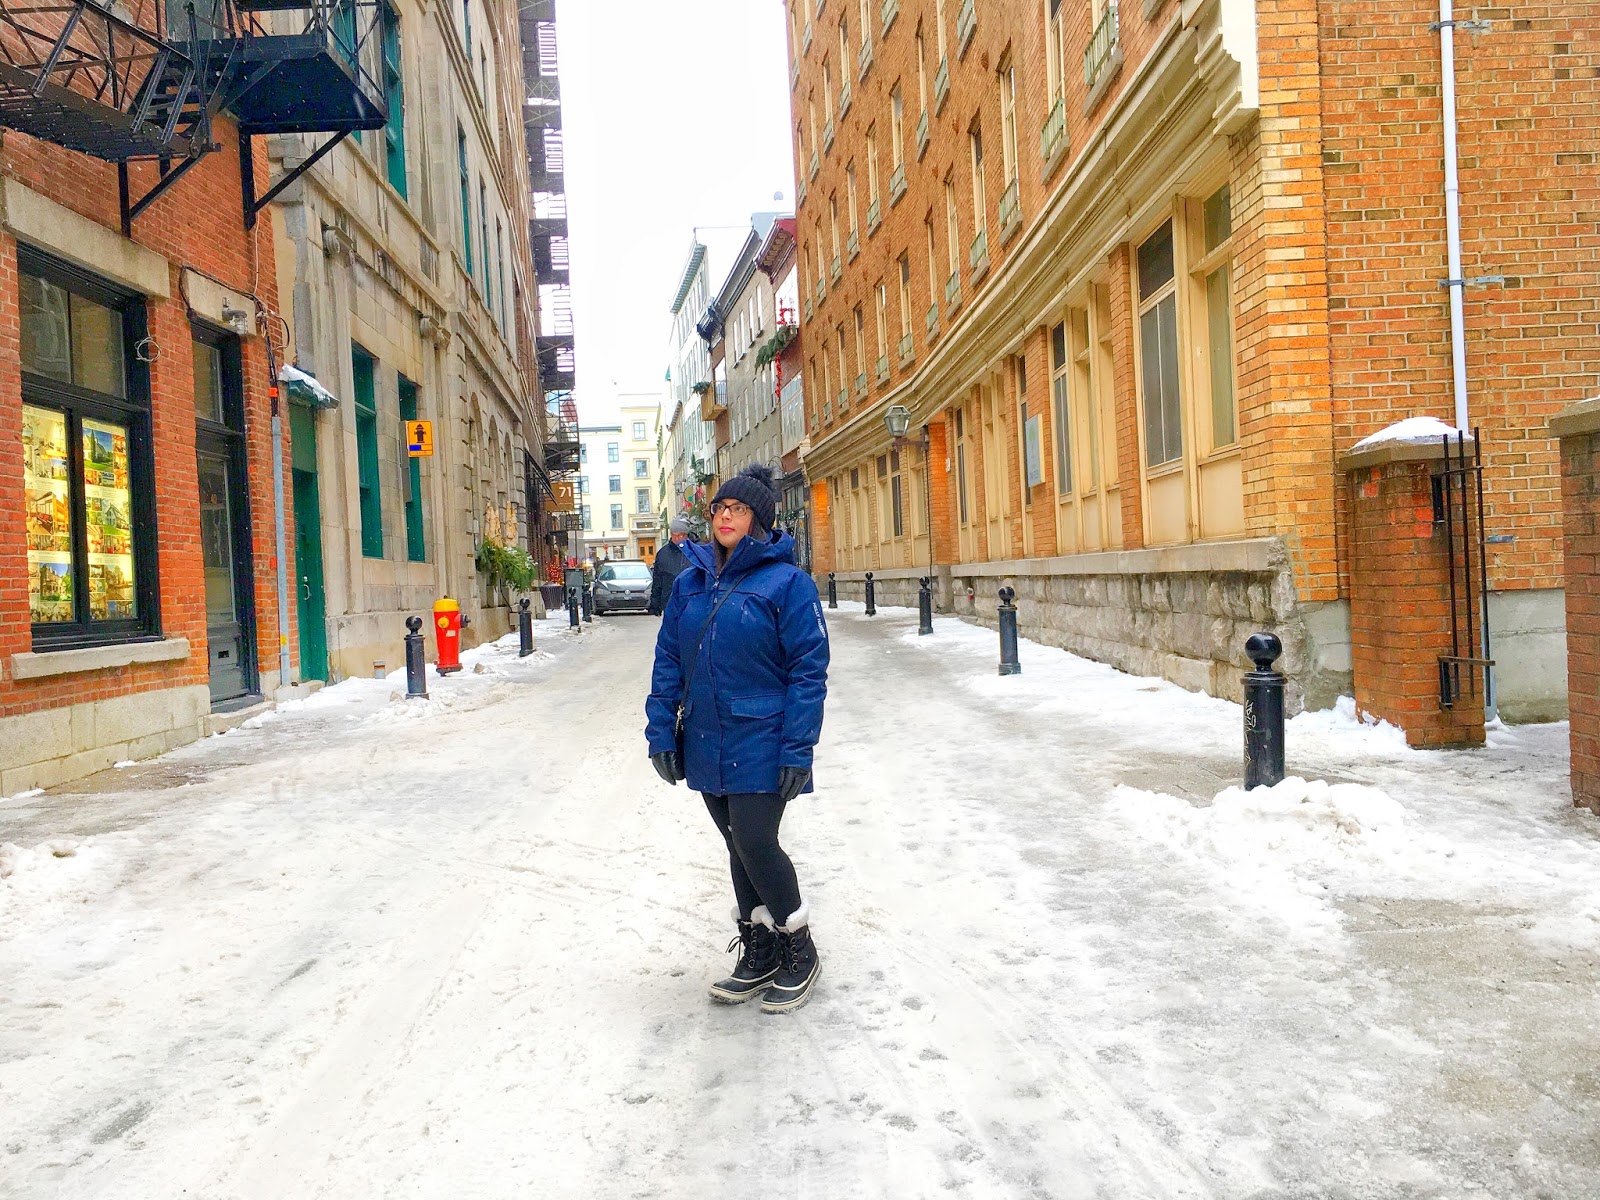 A Winter Wonderland in Quebec City